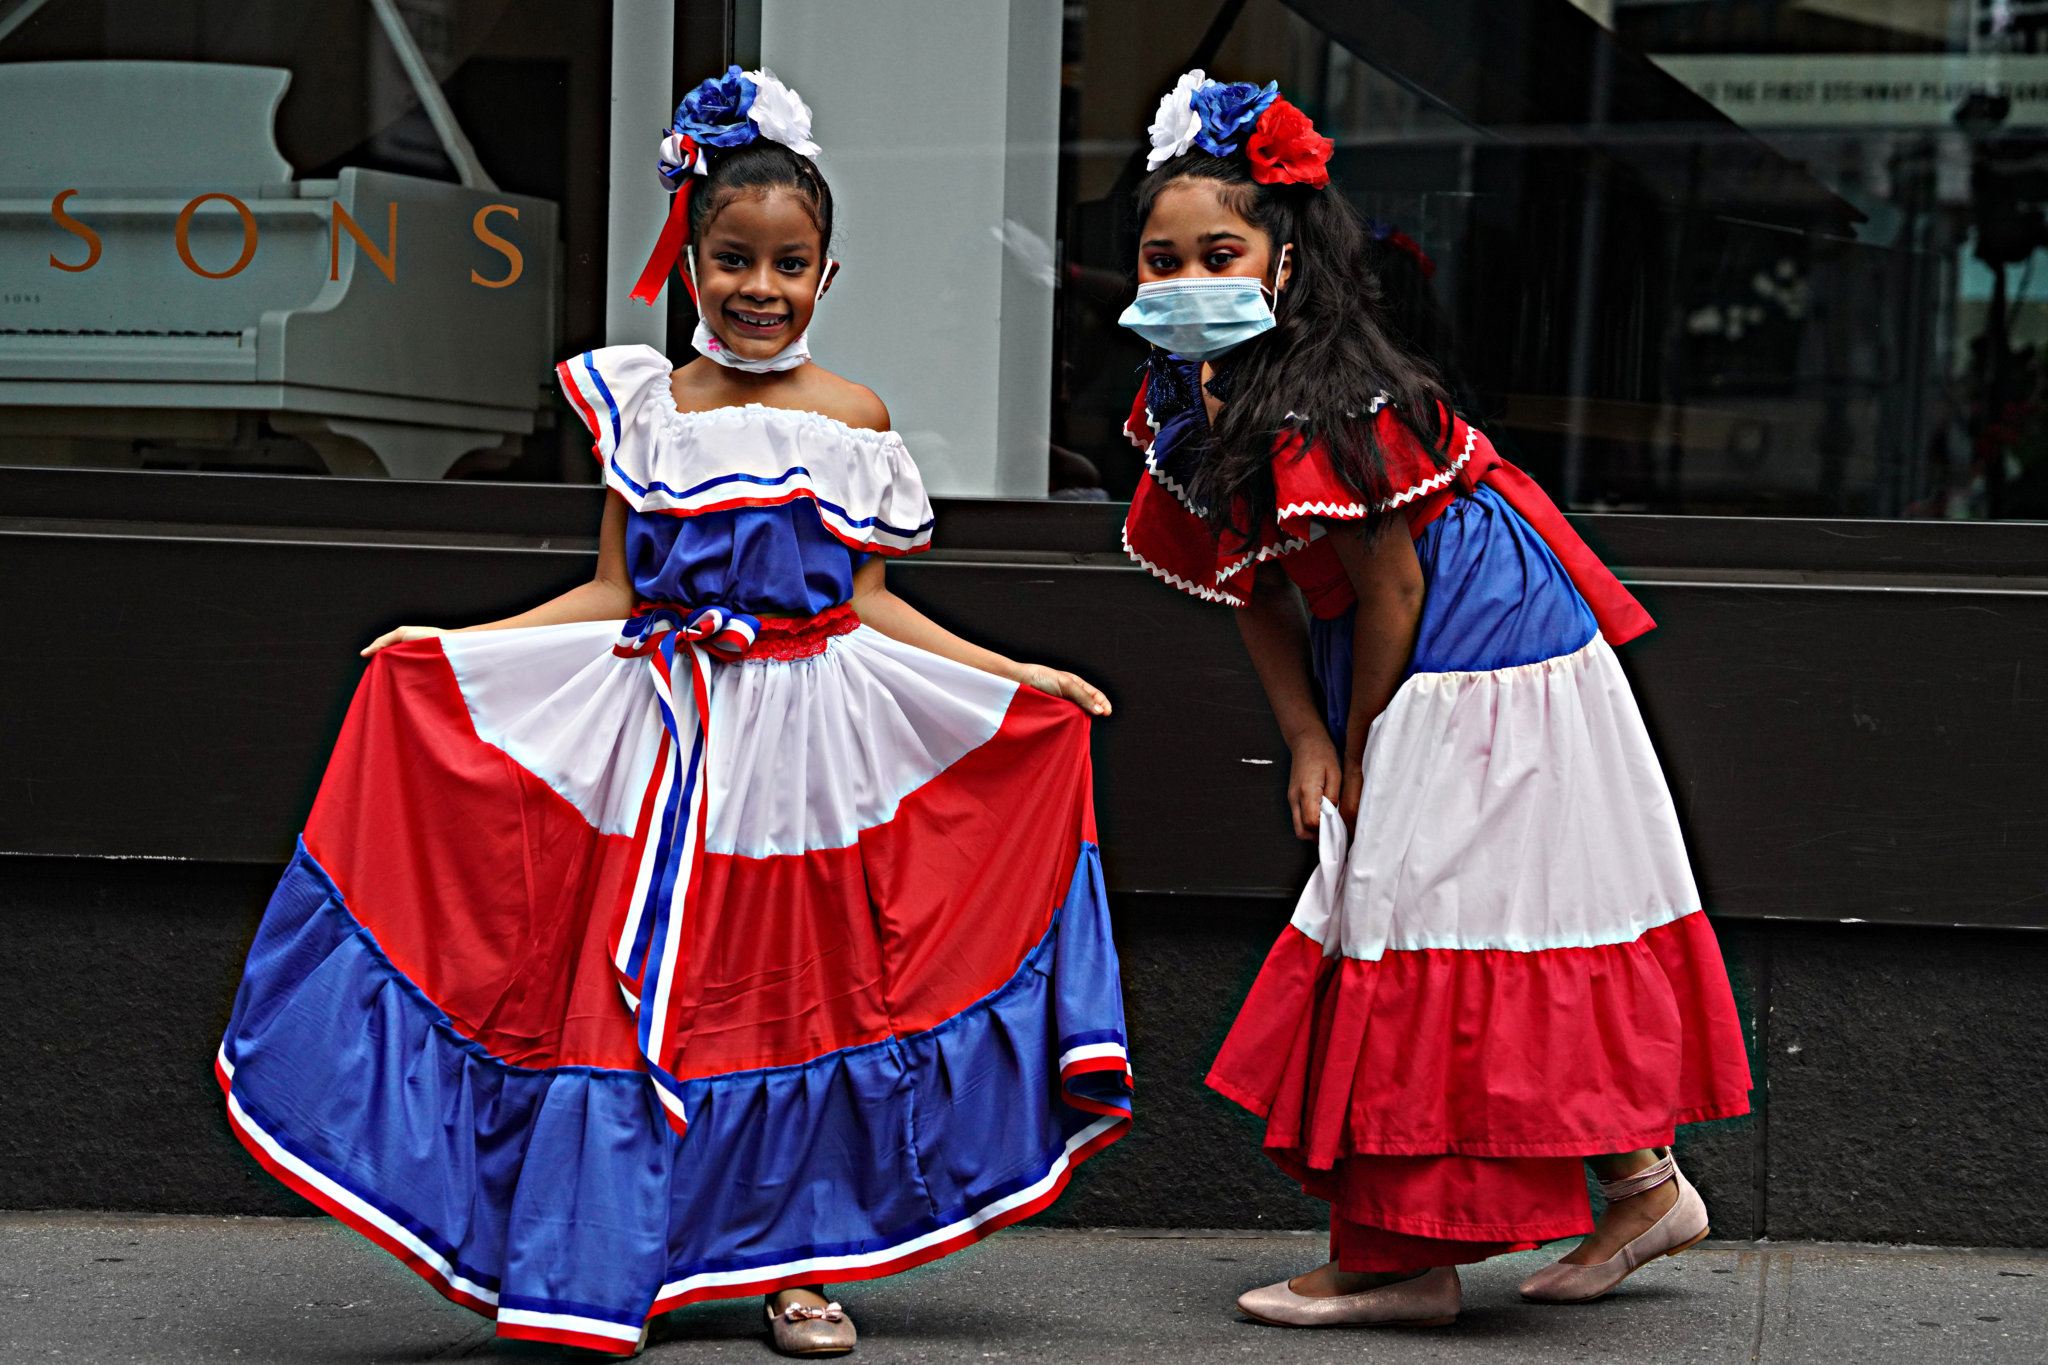 Hacia delante! Dominican Day Parade in Midtown uplifts community